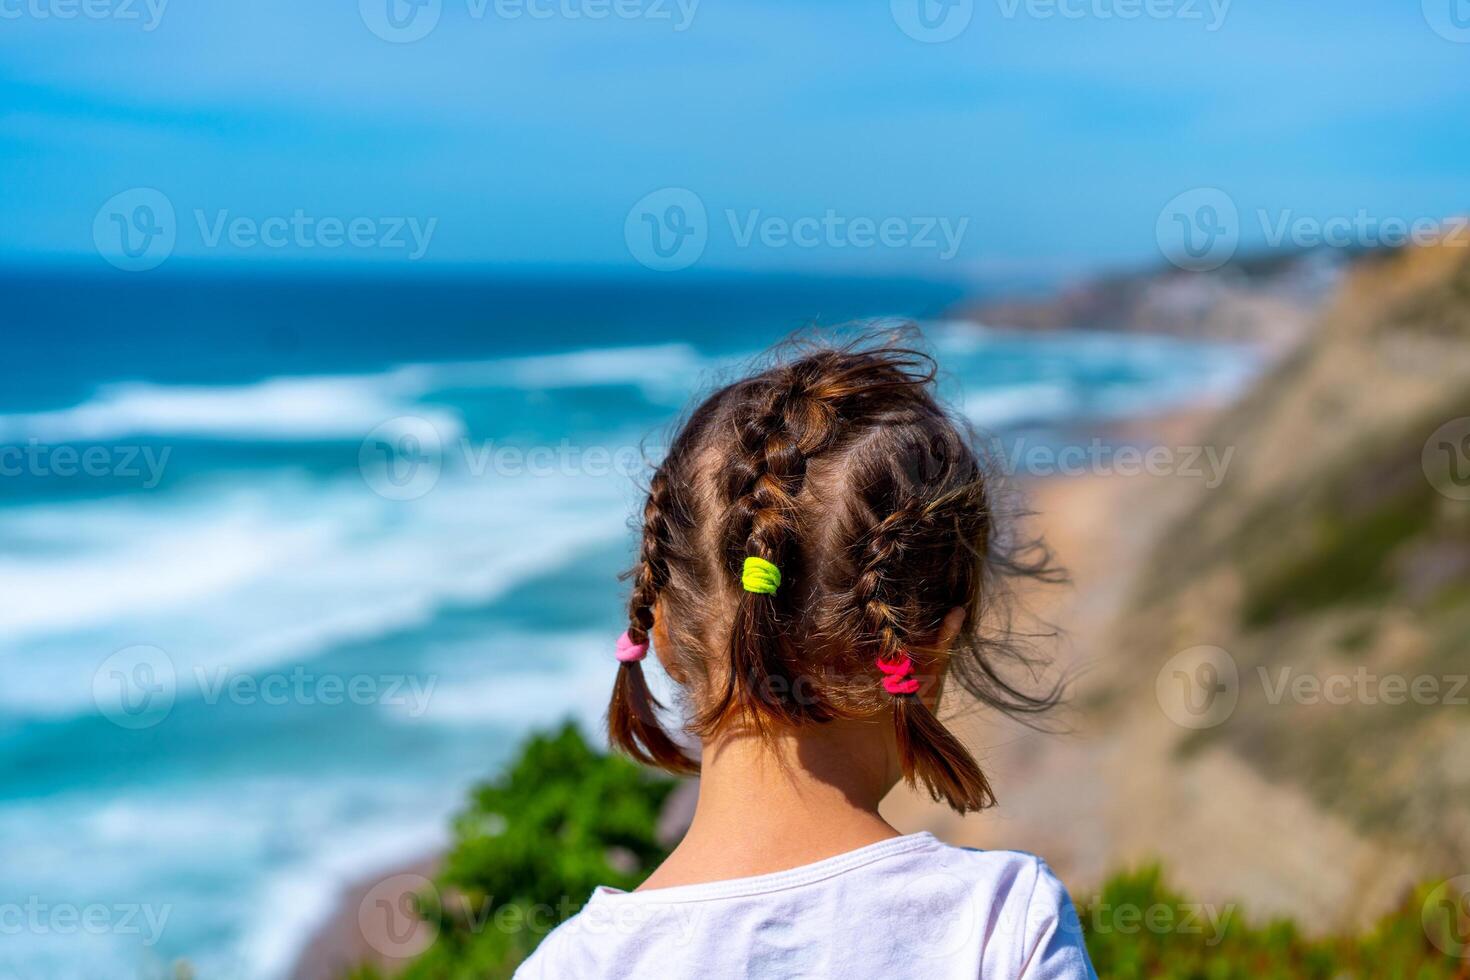 liten flicka ser tropisk sandig strand och hav med turkos vatten med vågor. foto